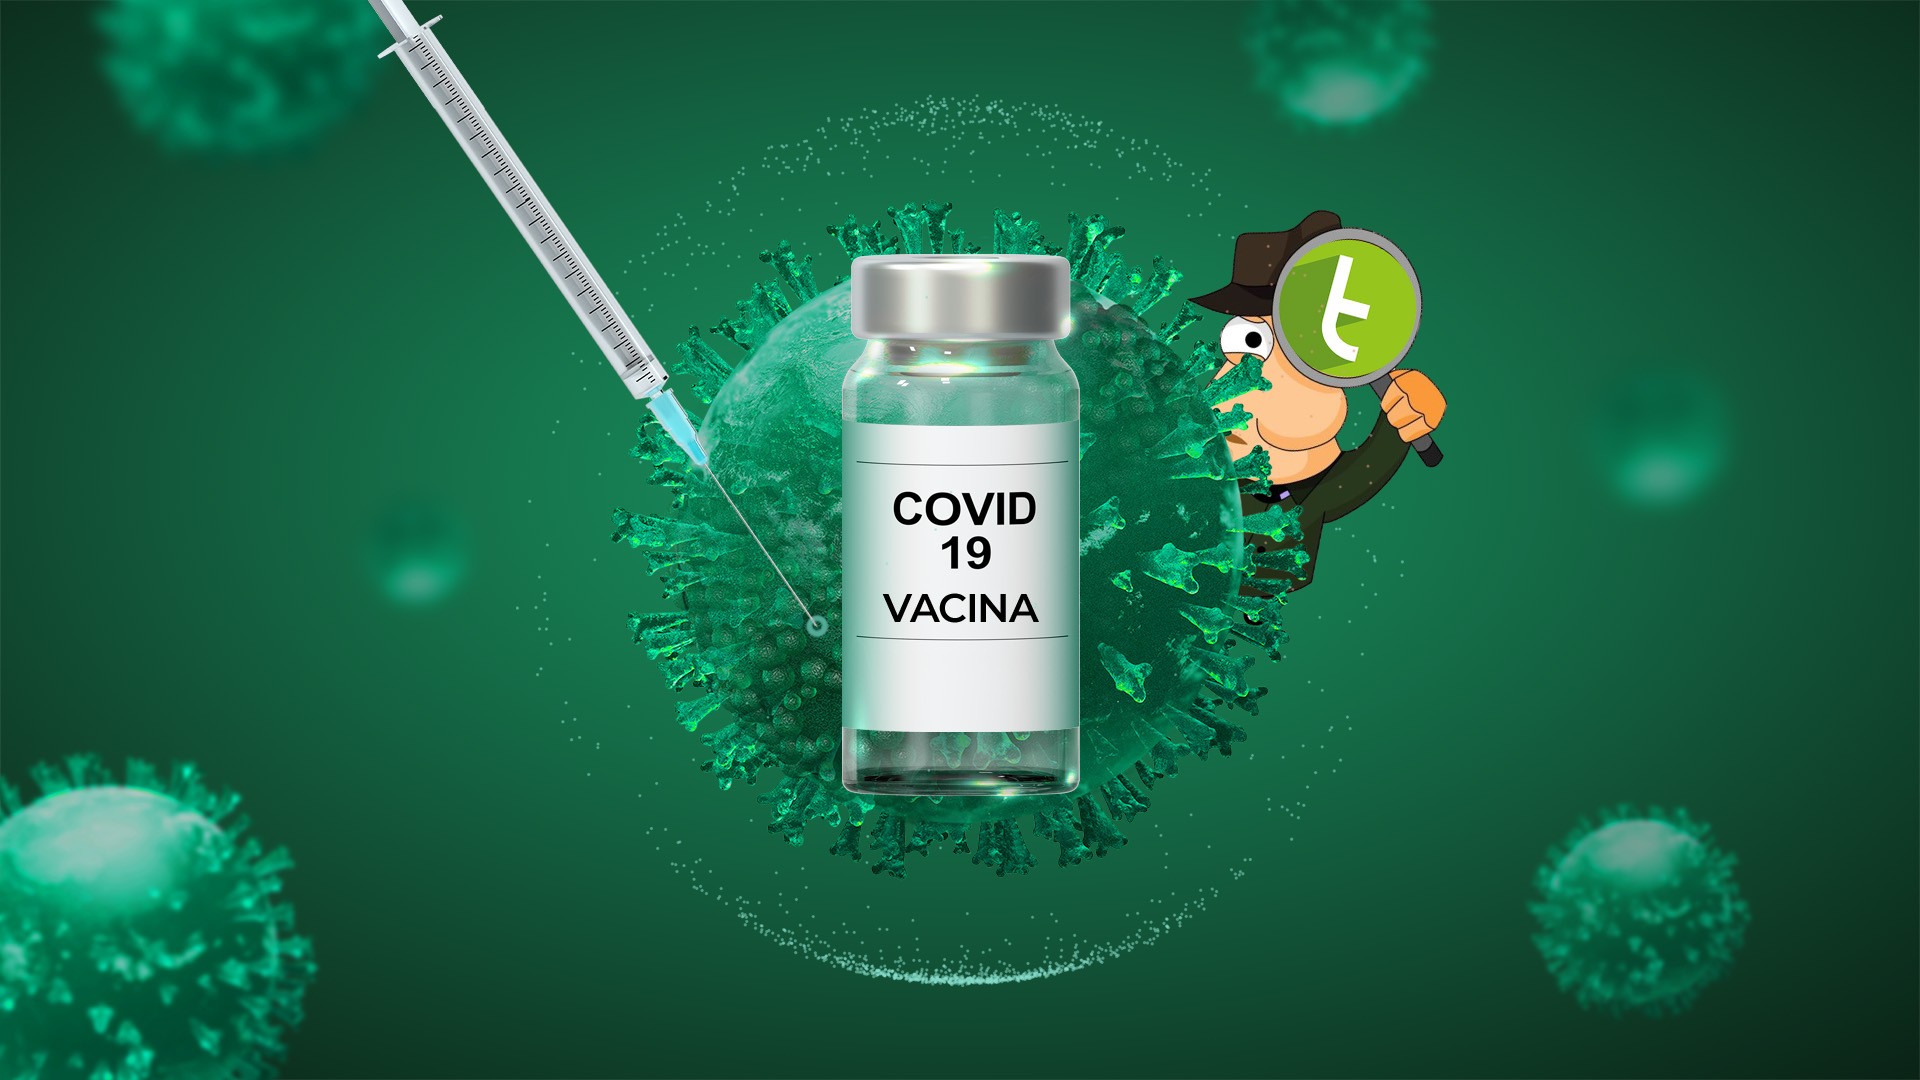 Coronavrus: por que vacinas so capazes de frear a transmisso da Covid-19? | Detetive TC